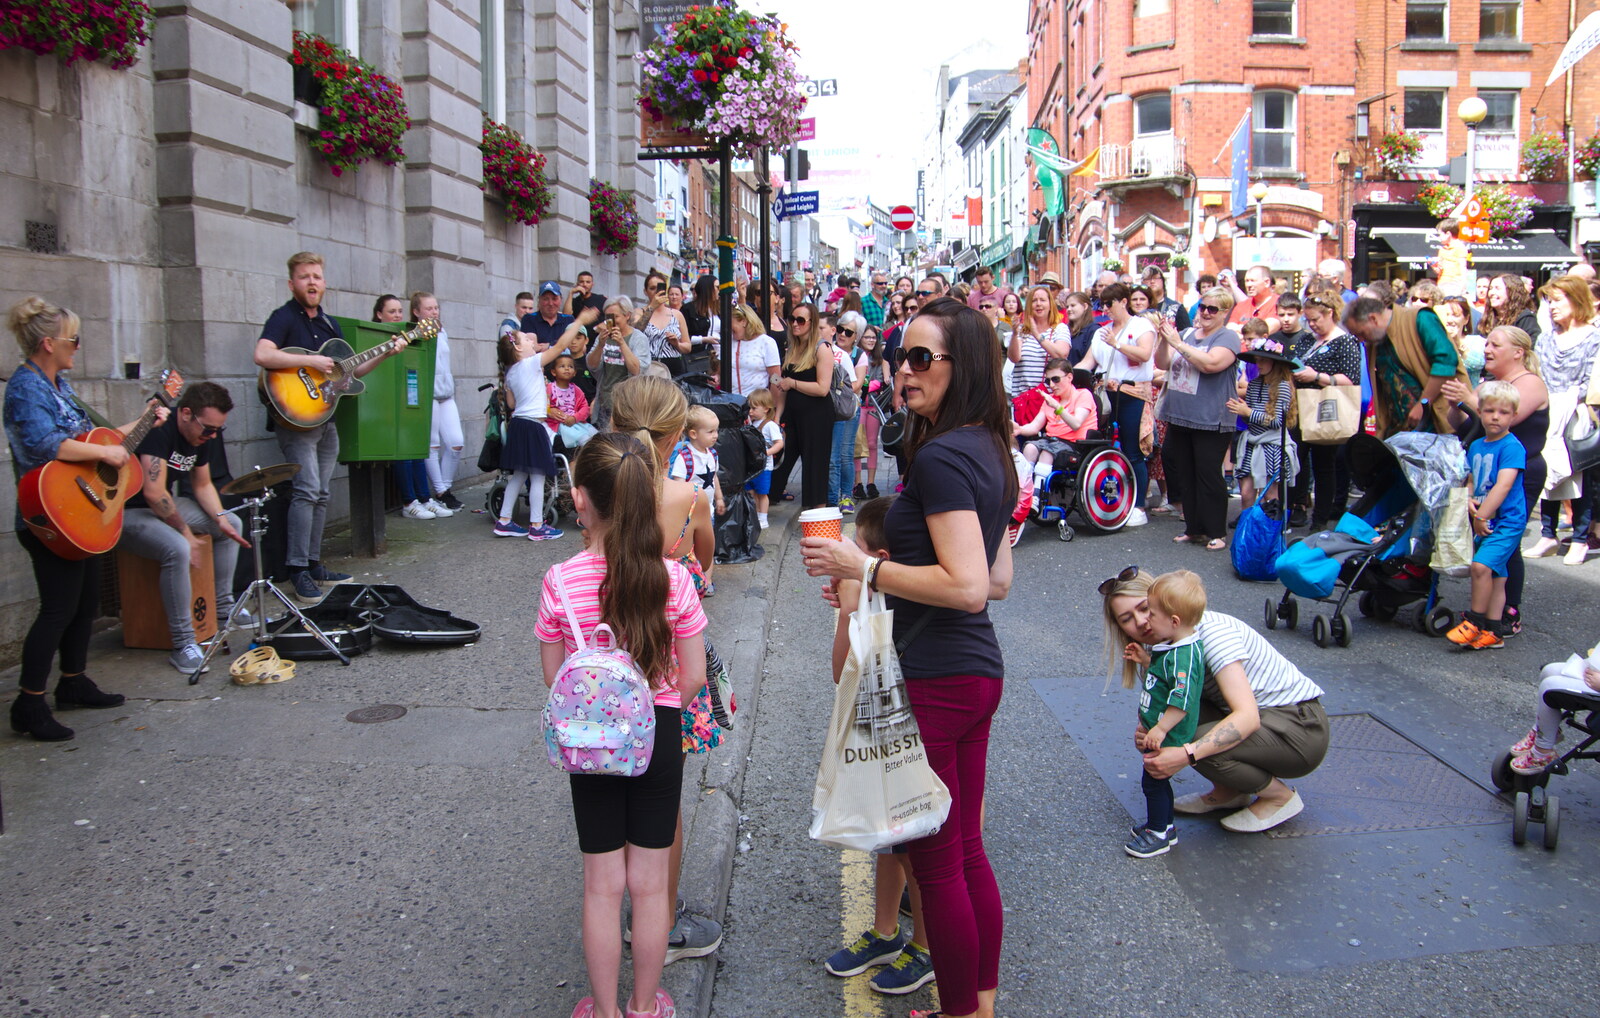 Big crowds on Shop Street from The Fleadh Cheoil na hÉireann, Droichead Átha, Co. Louth, Ireland - 13th August 2019